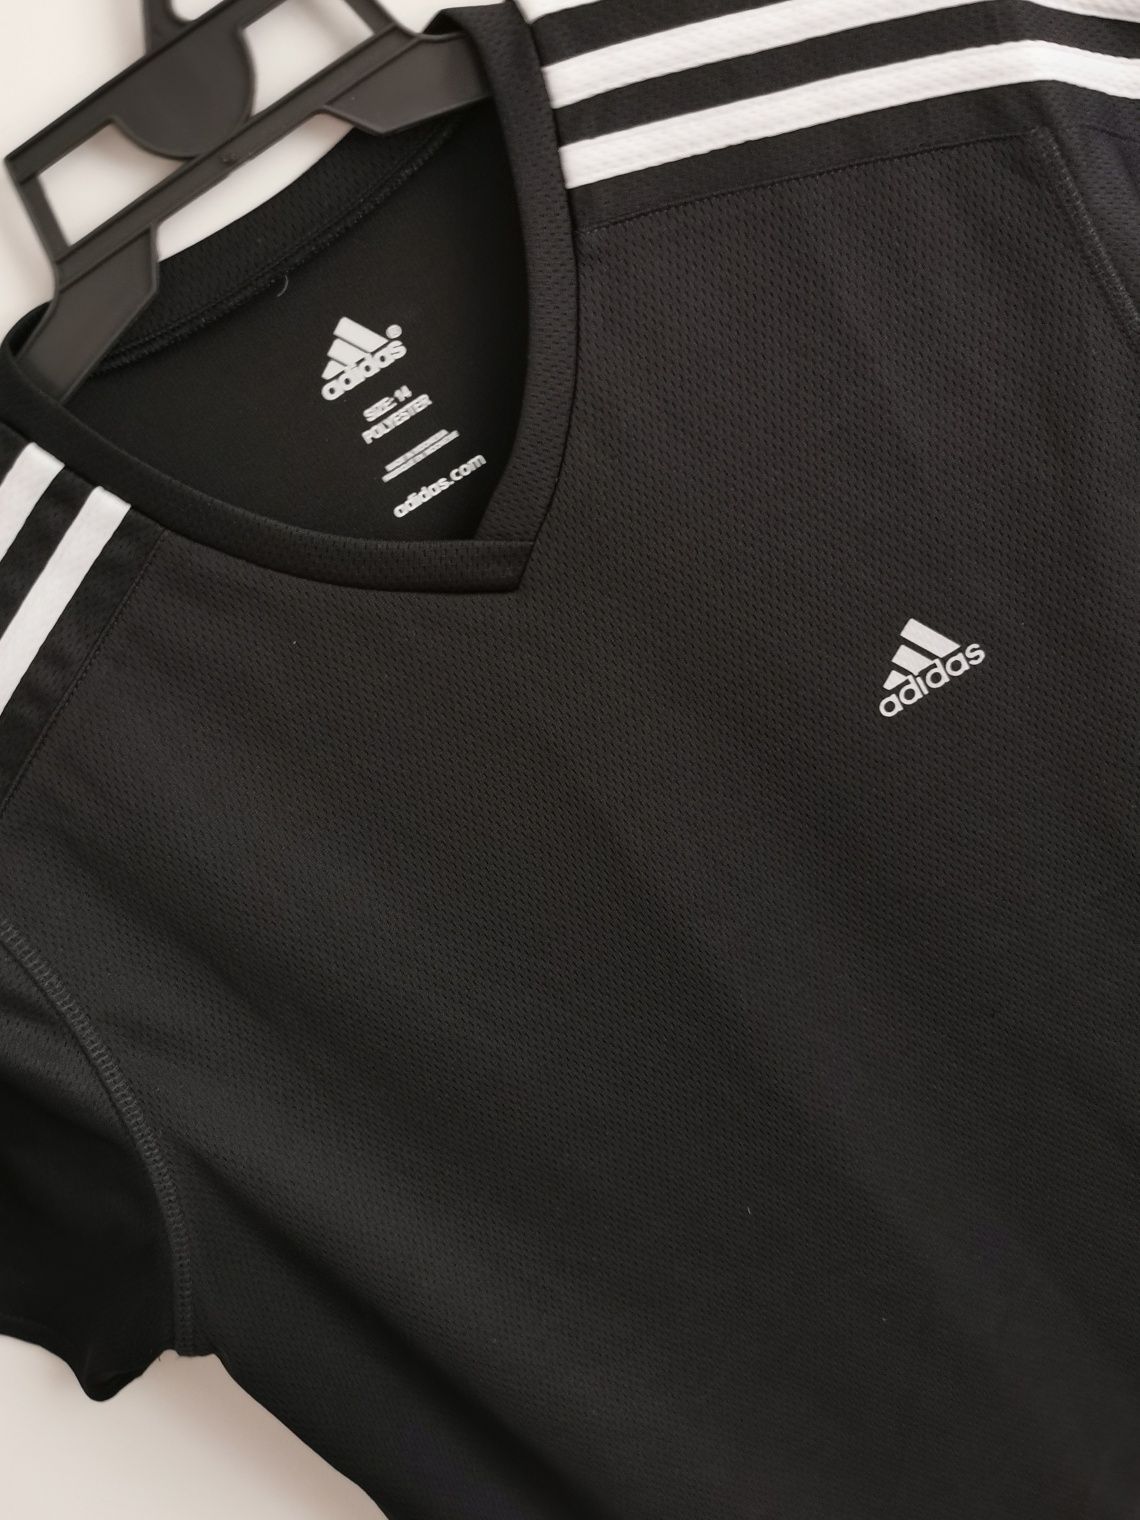 Adidas t-shirt koszulka krótki rękaw sportowa logowana damska L